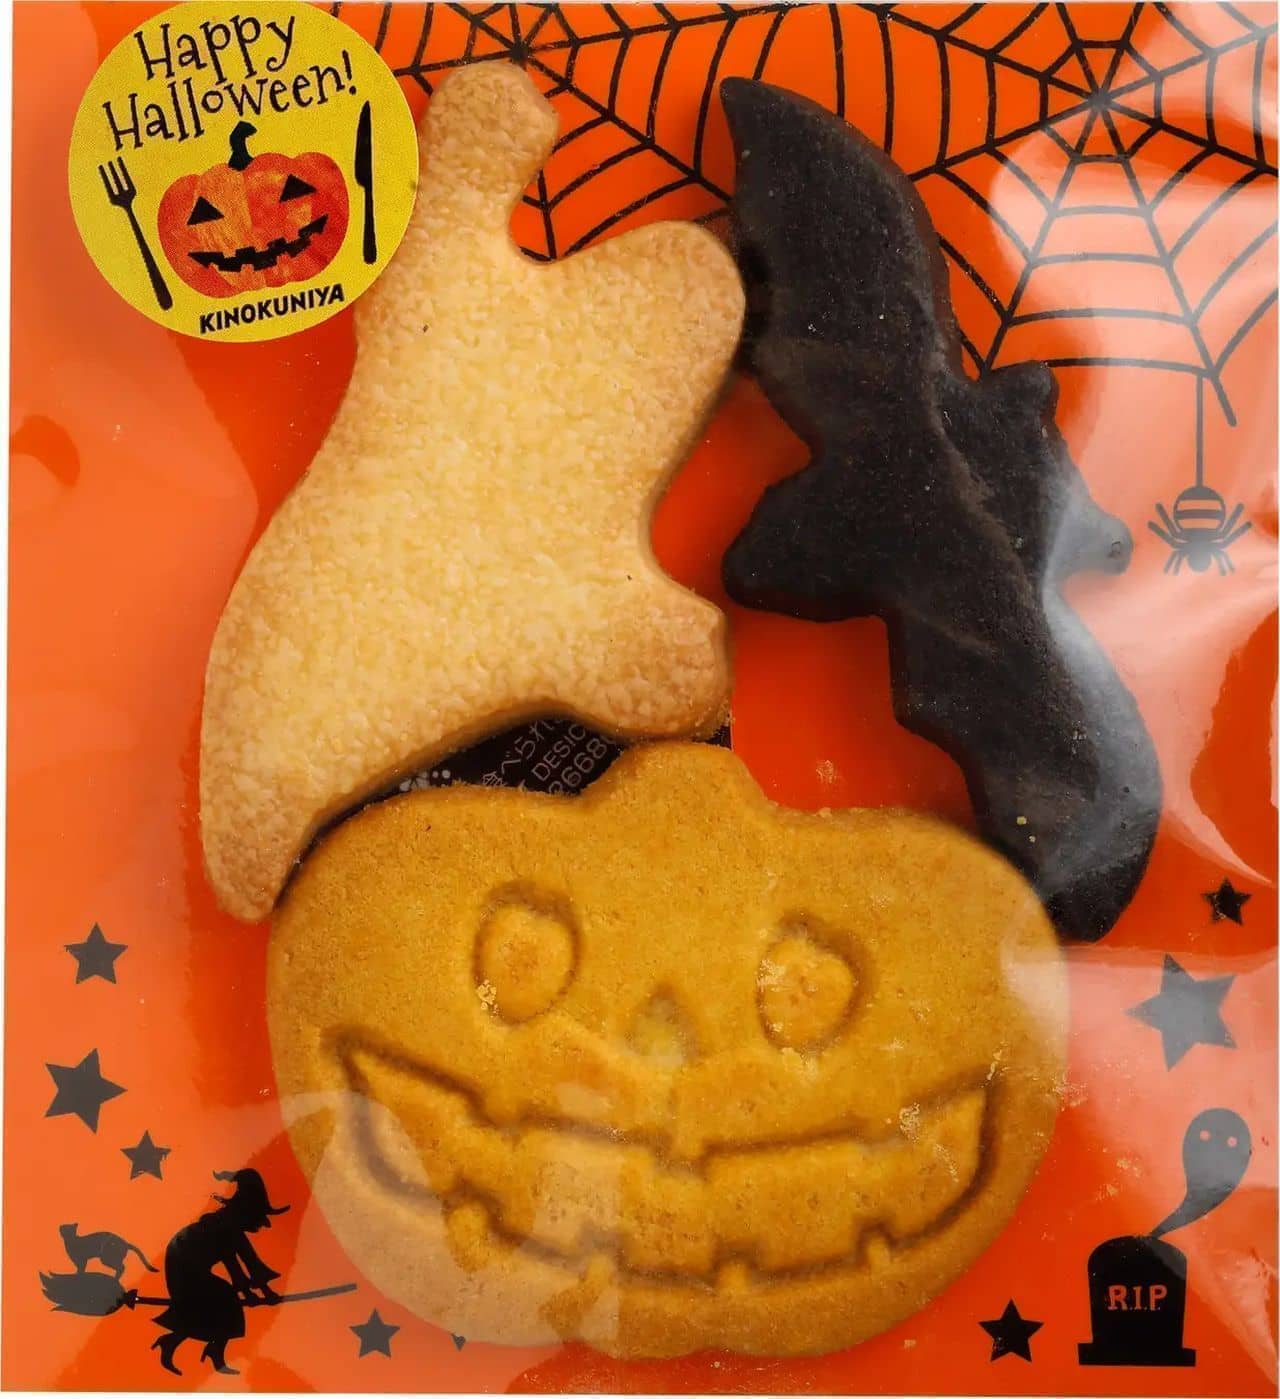 KINOKUNIYA "Happy Halloween Cookies